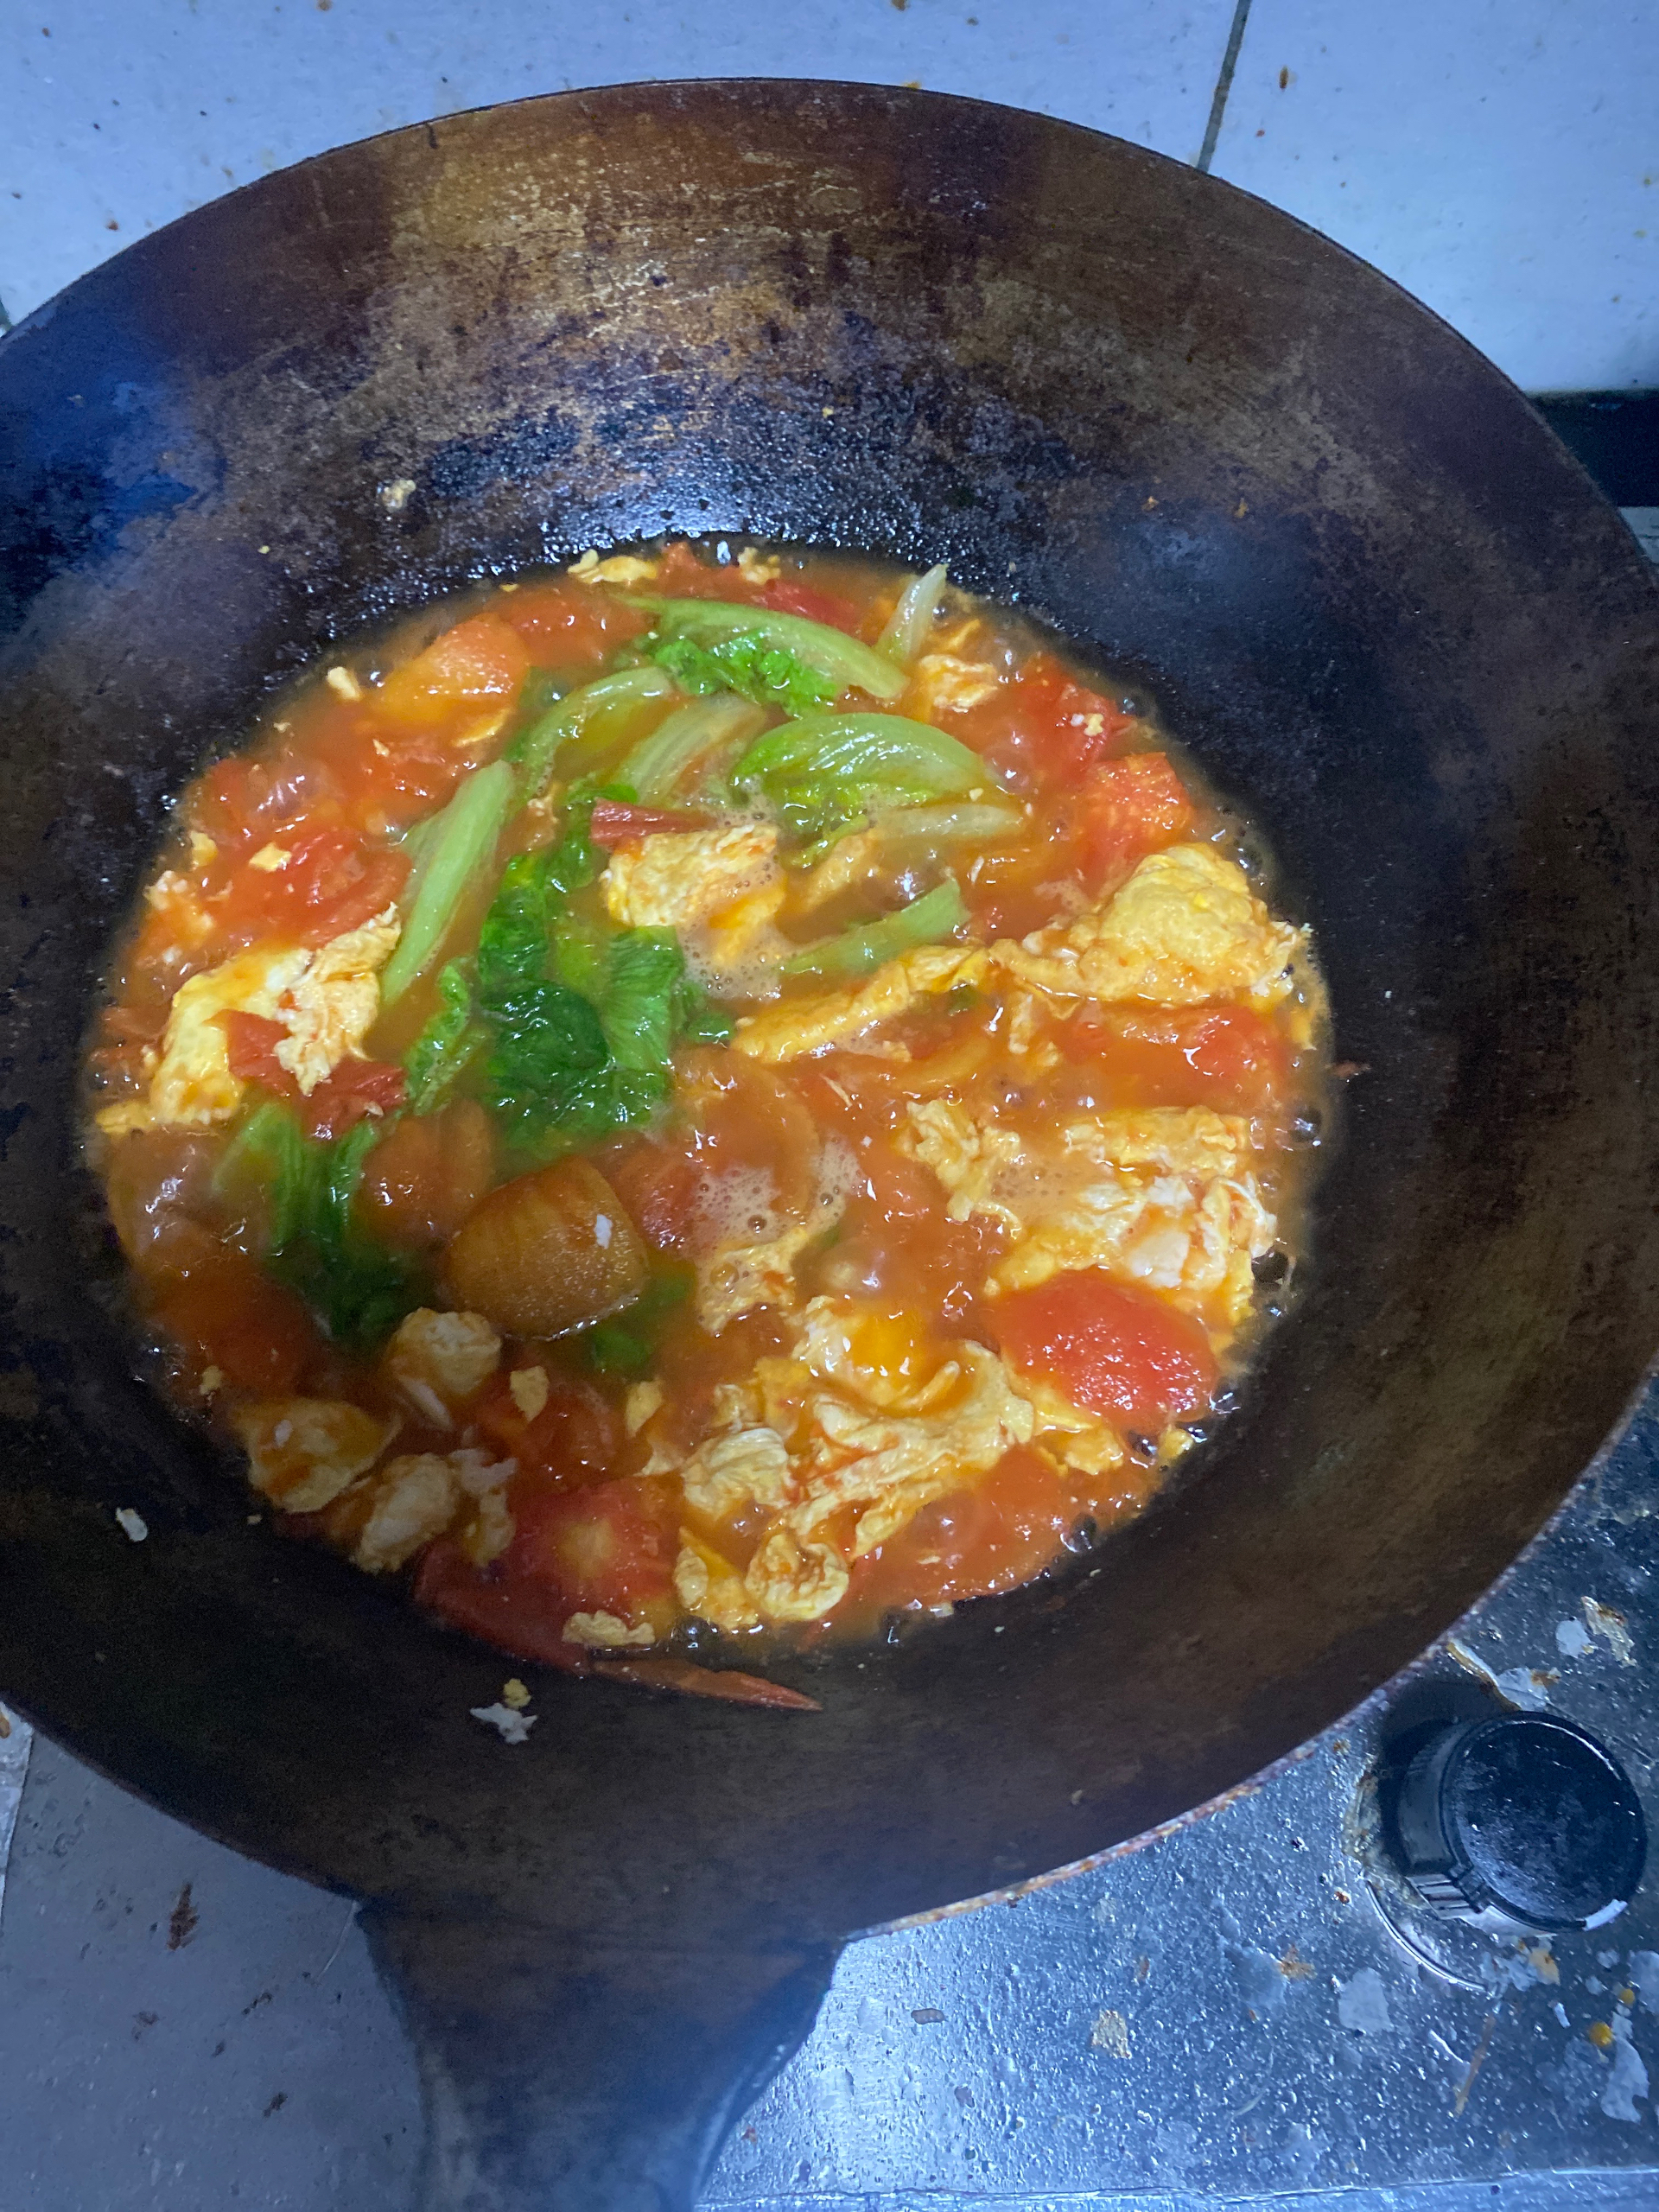 十分钟搞定的「西红柿鸡蛋汤面」